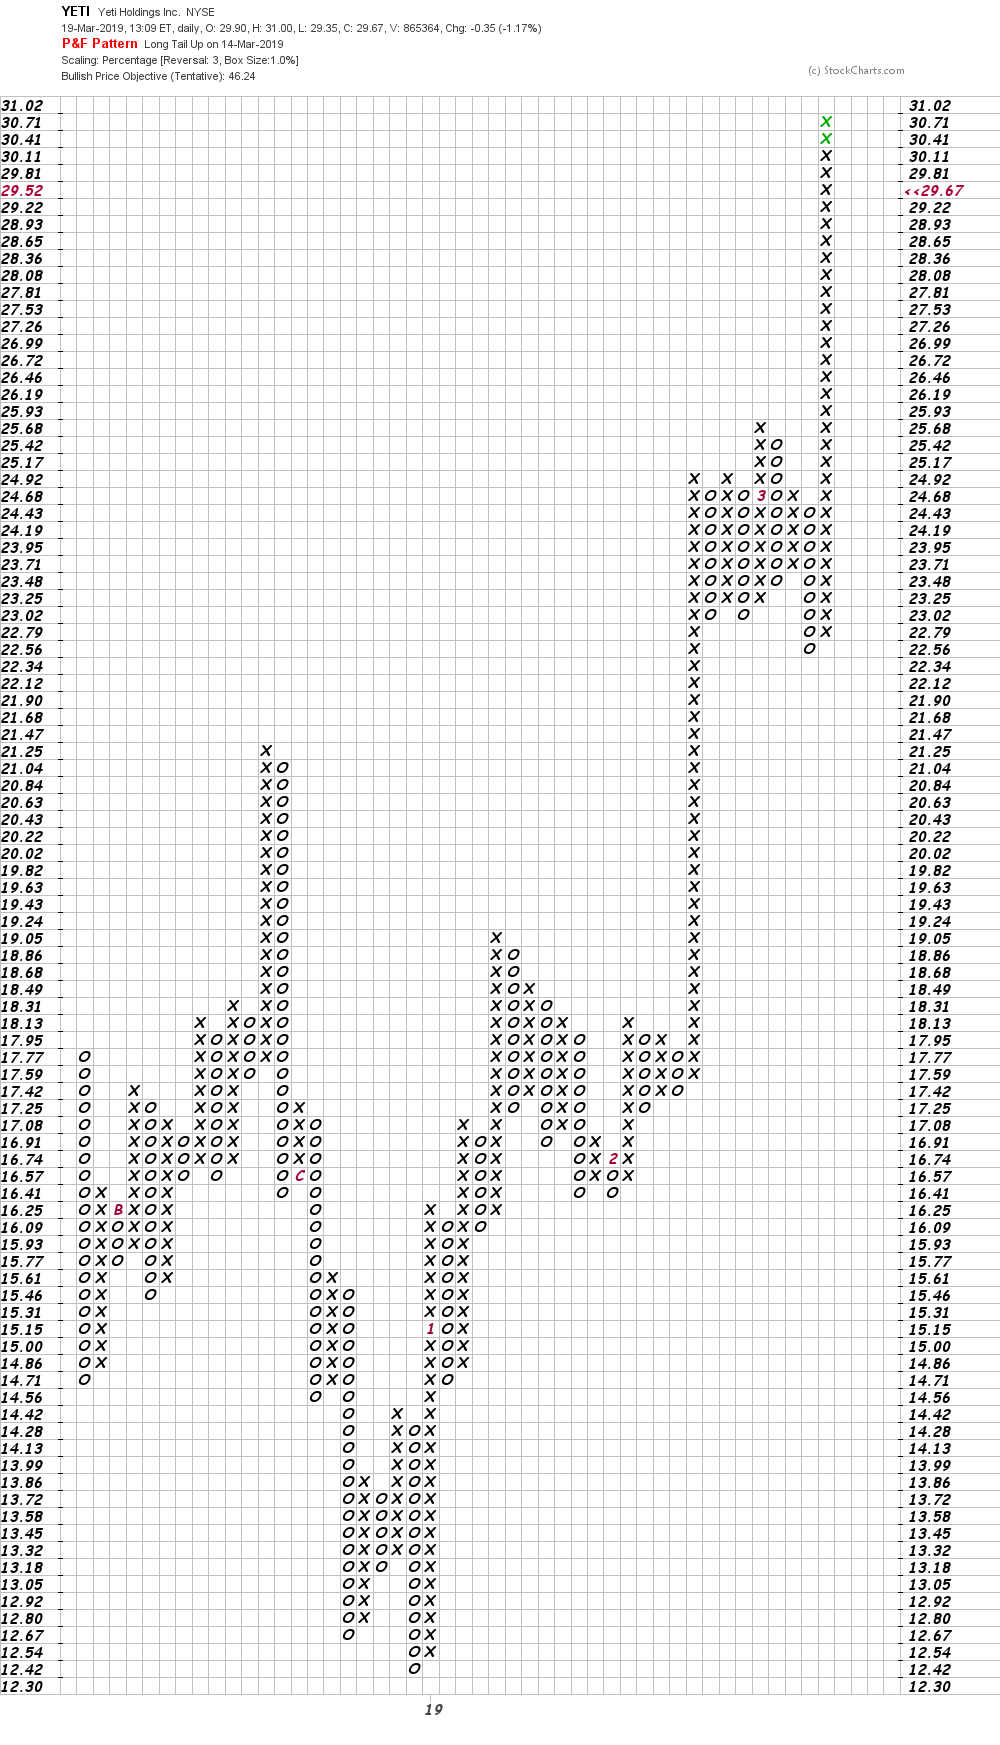 Yeti Stock Chart